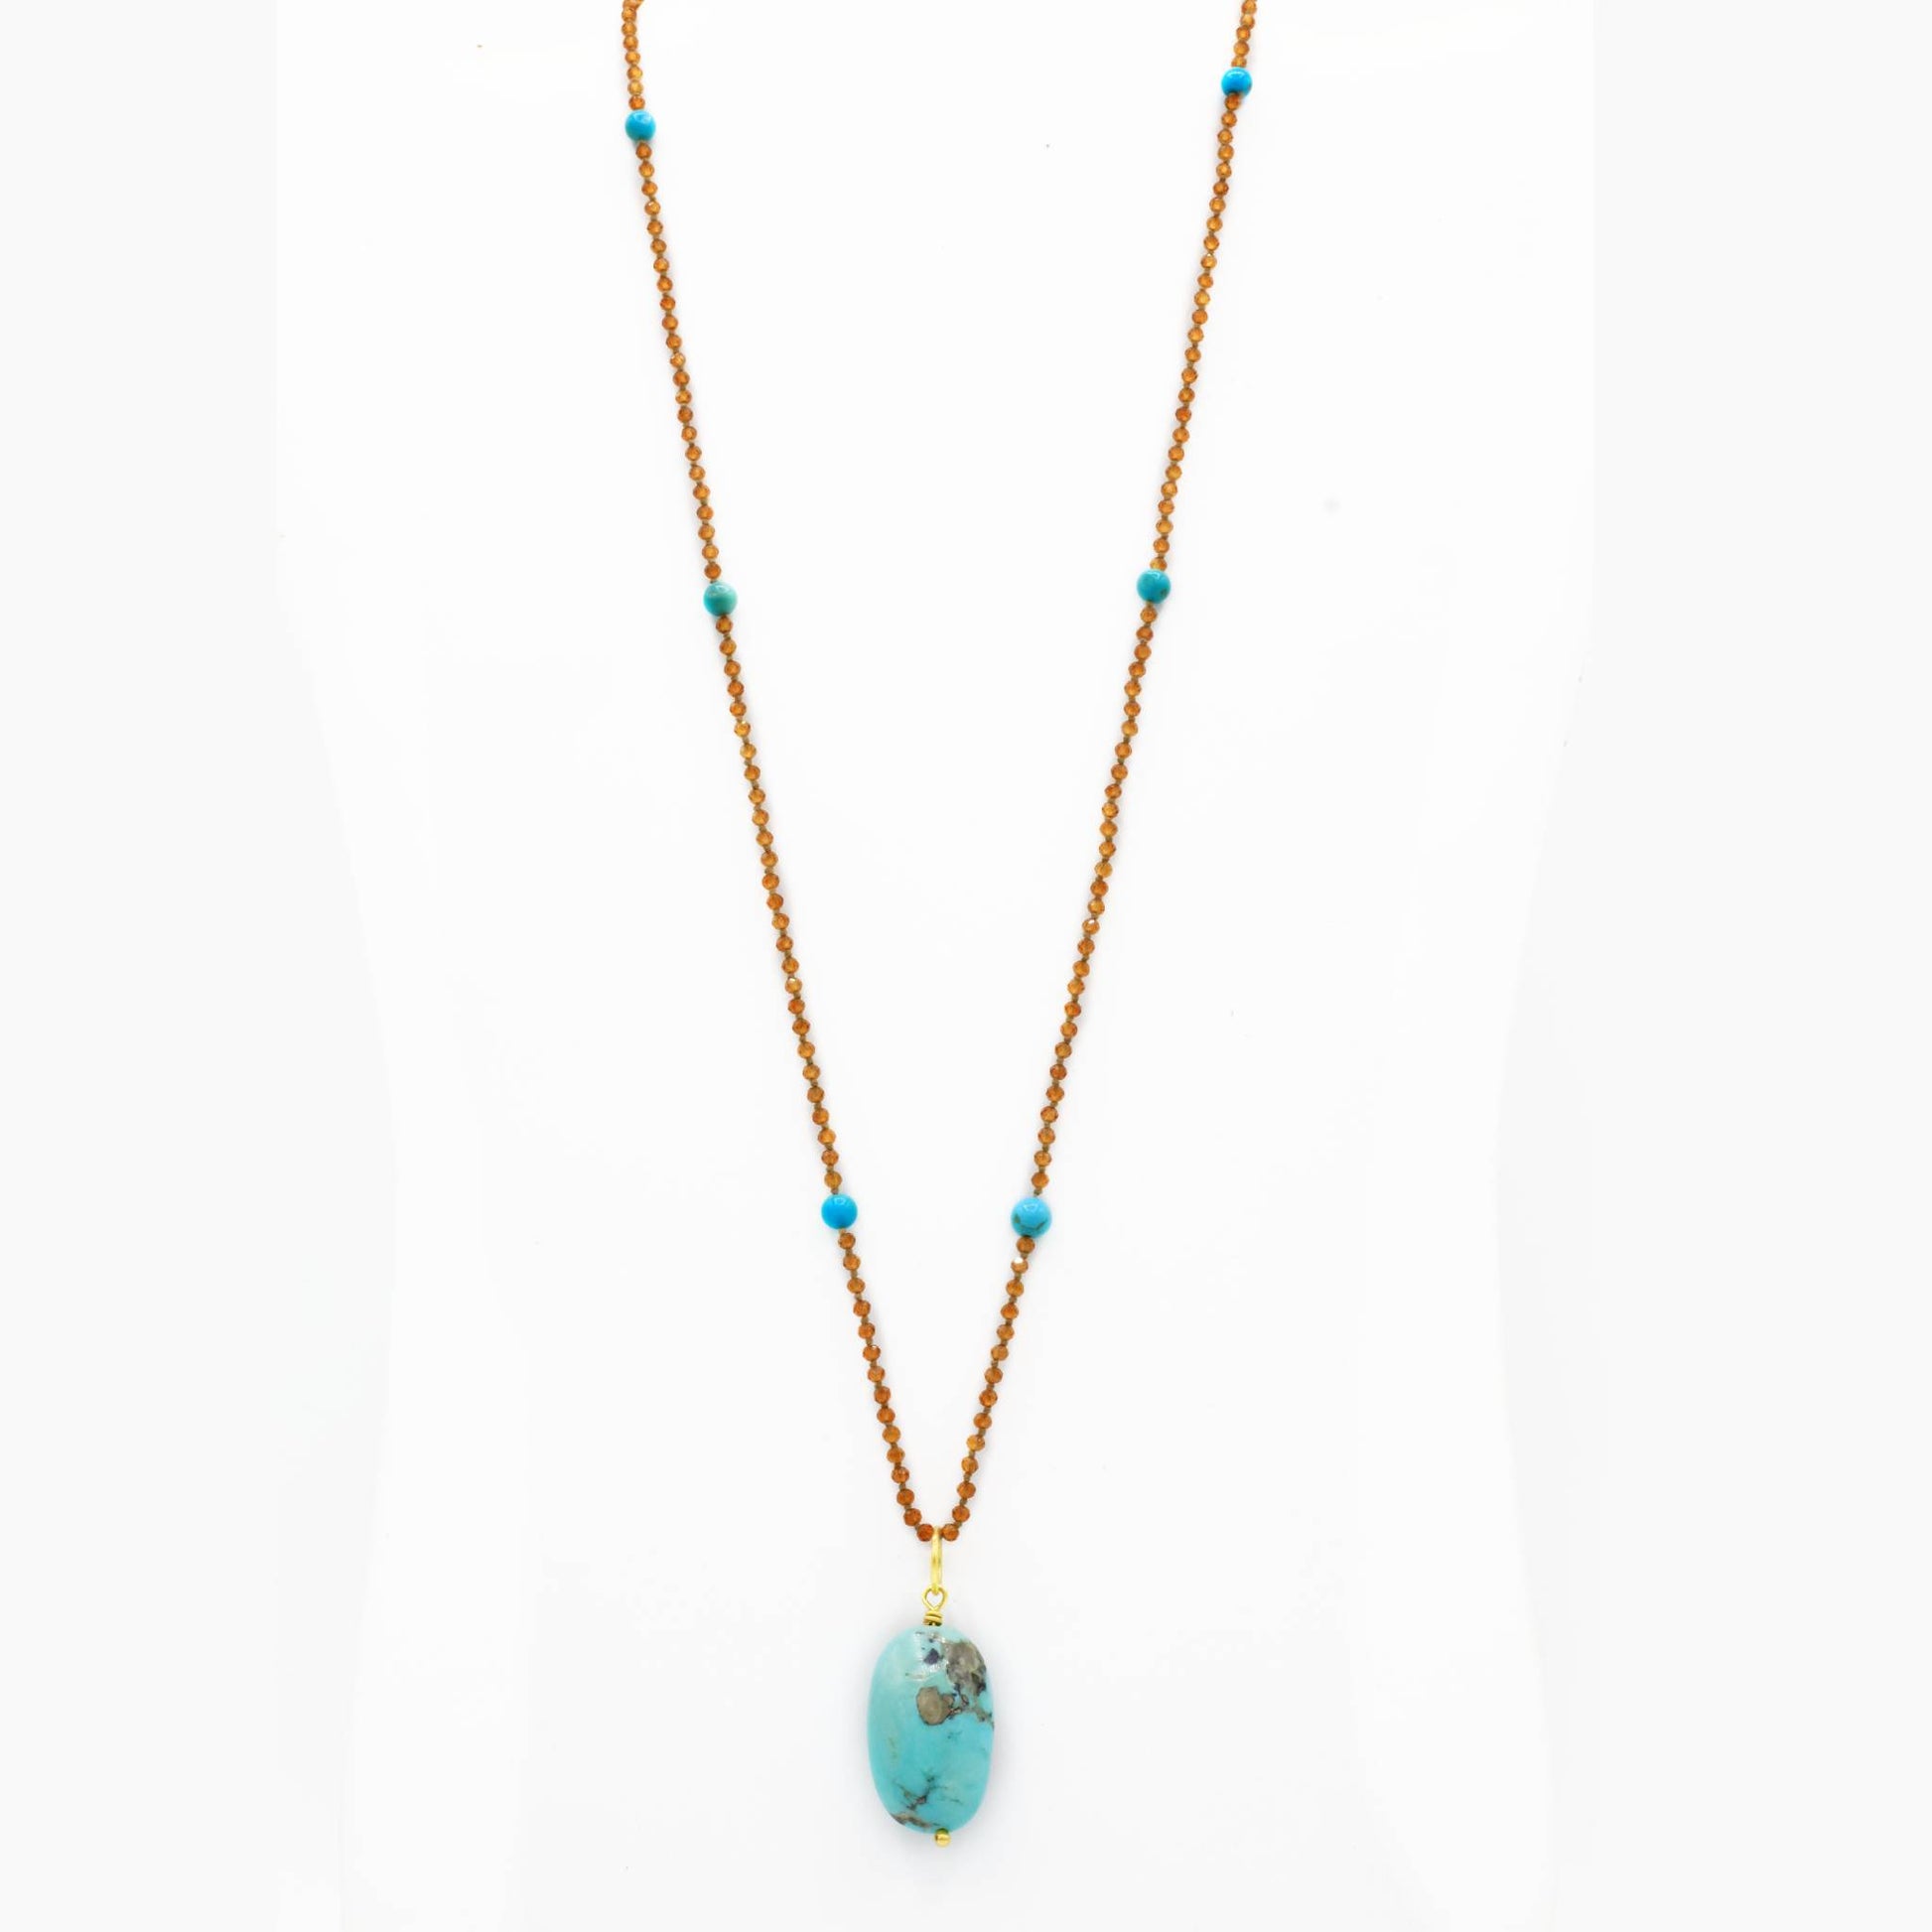 Lena Skadegard Jewels | Turquoise + Hessonite Garnet 9k Gold Pendant Necklace | Firecracker